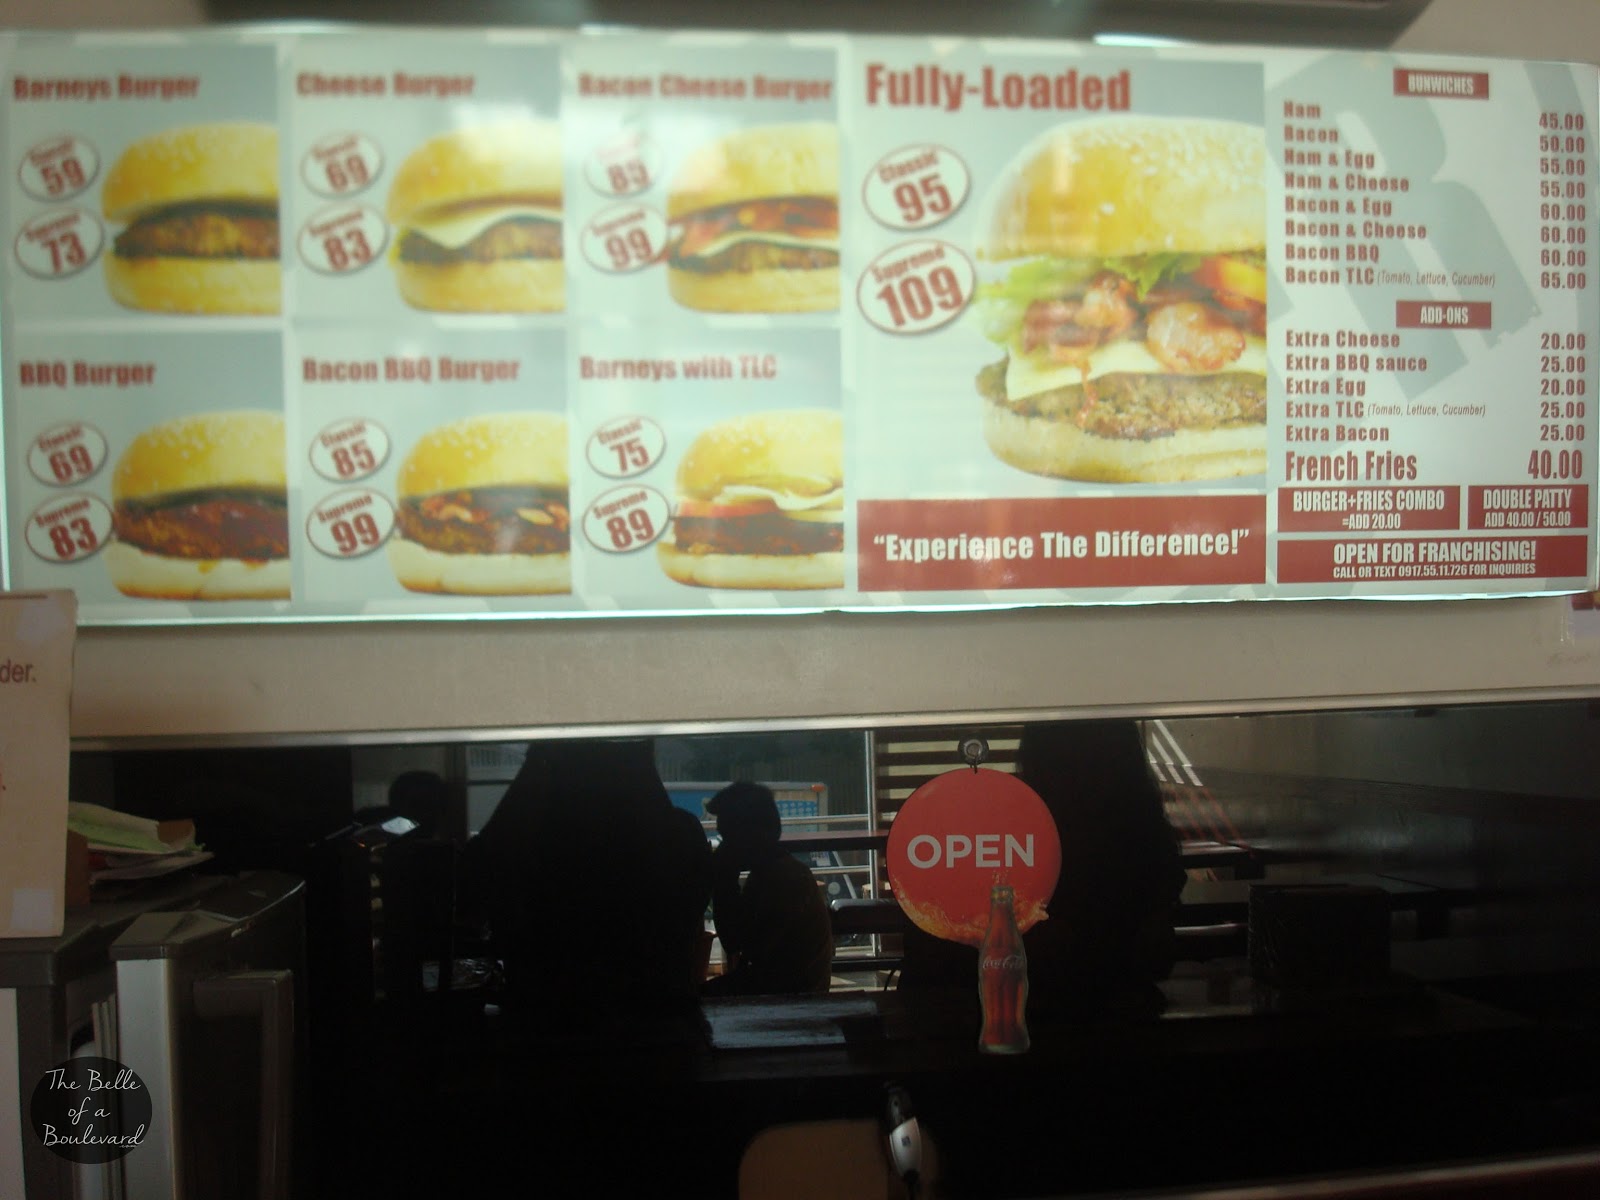 Barneys Burger Marikina City Menu